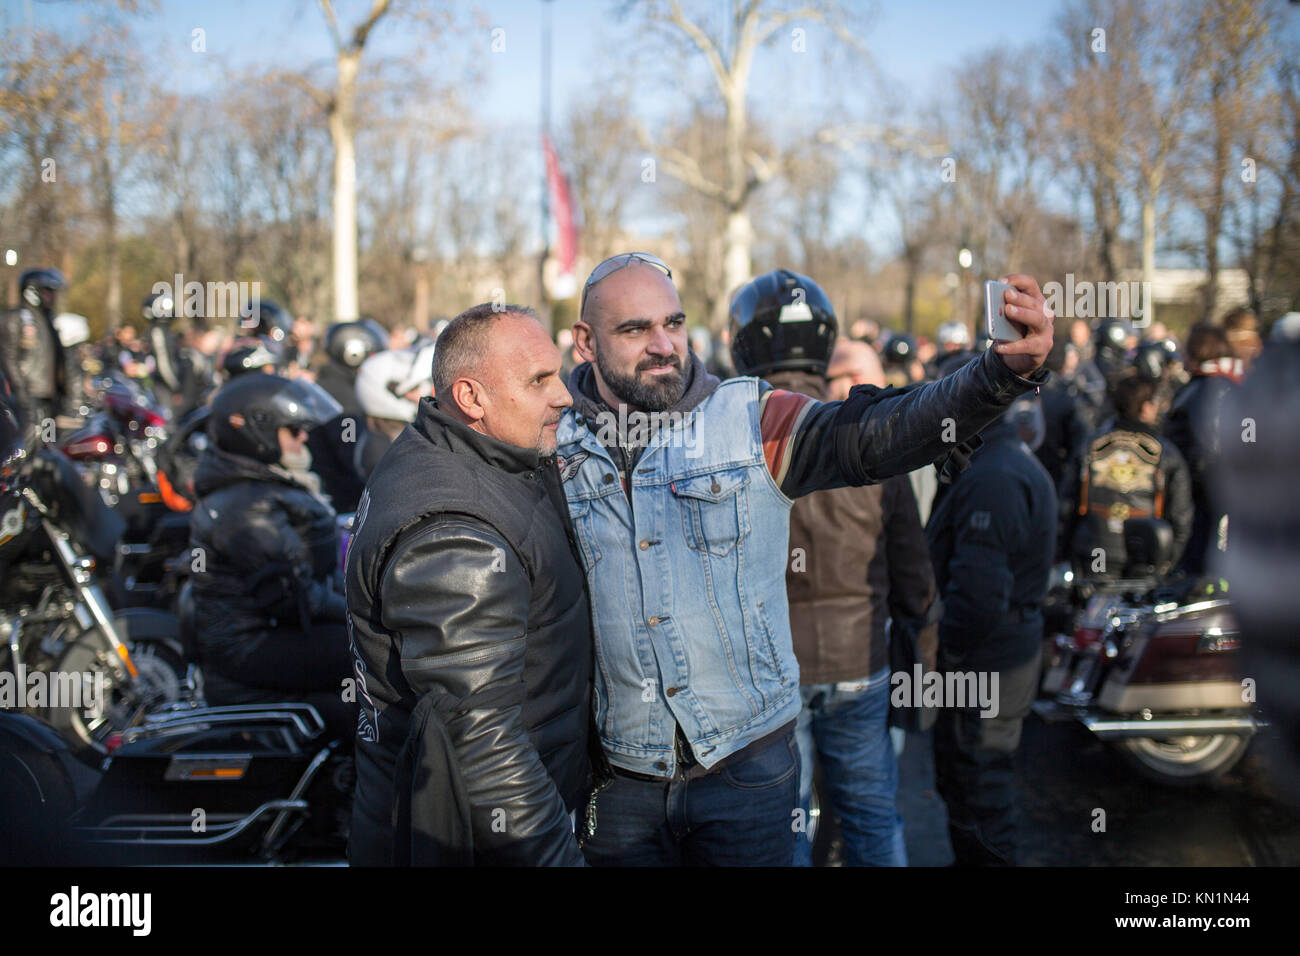 Beliebt zum Gedenken an den Tod des französischen Sänger Johnny Hallyday in Paris: 2 harte Biker einen selfie Stockfoto